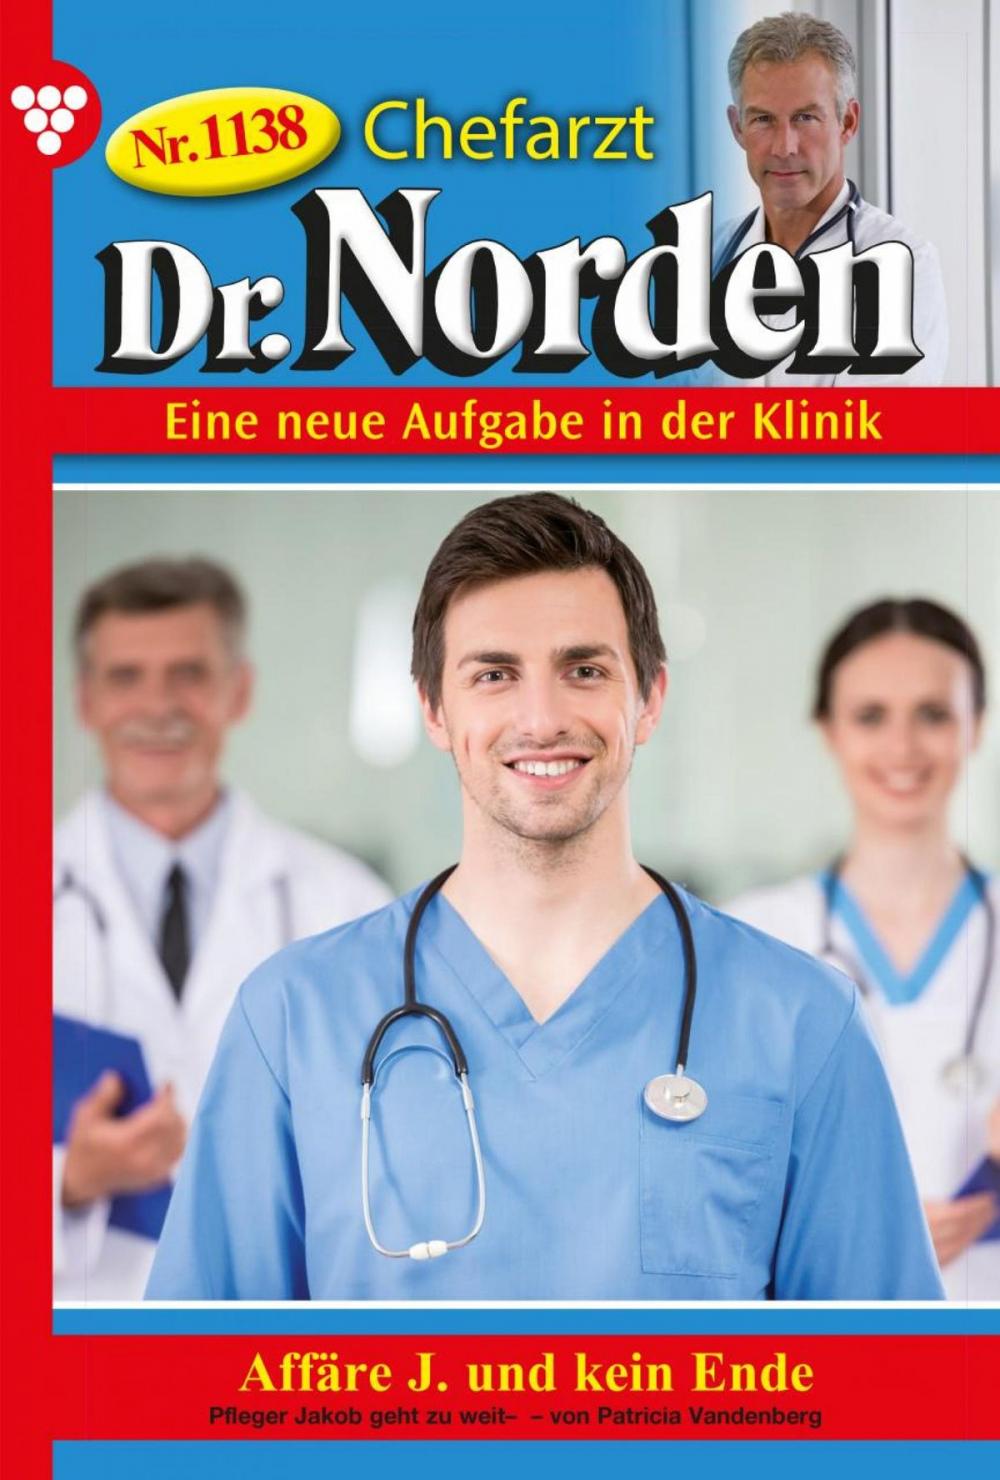 Big bigCover of Chefarzt Dr. Norden 1138 – Arztroman